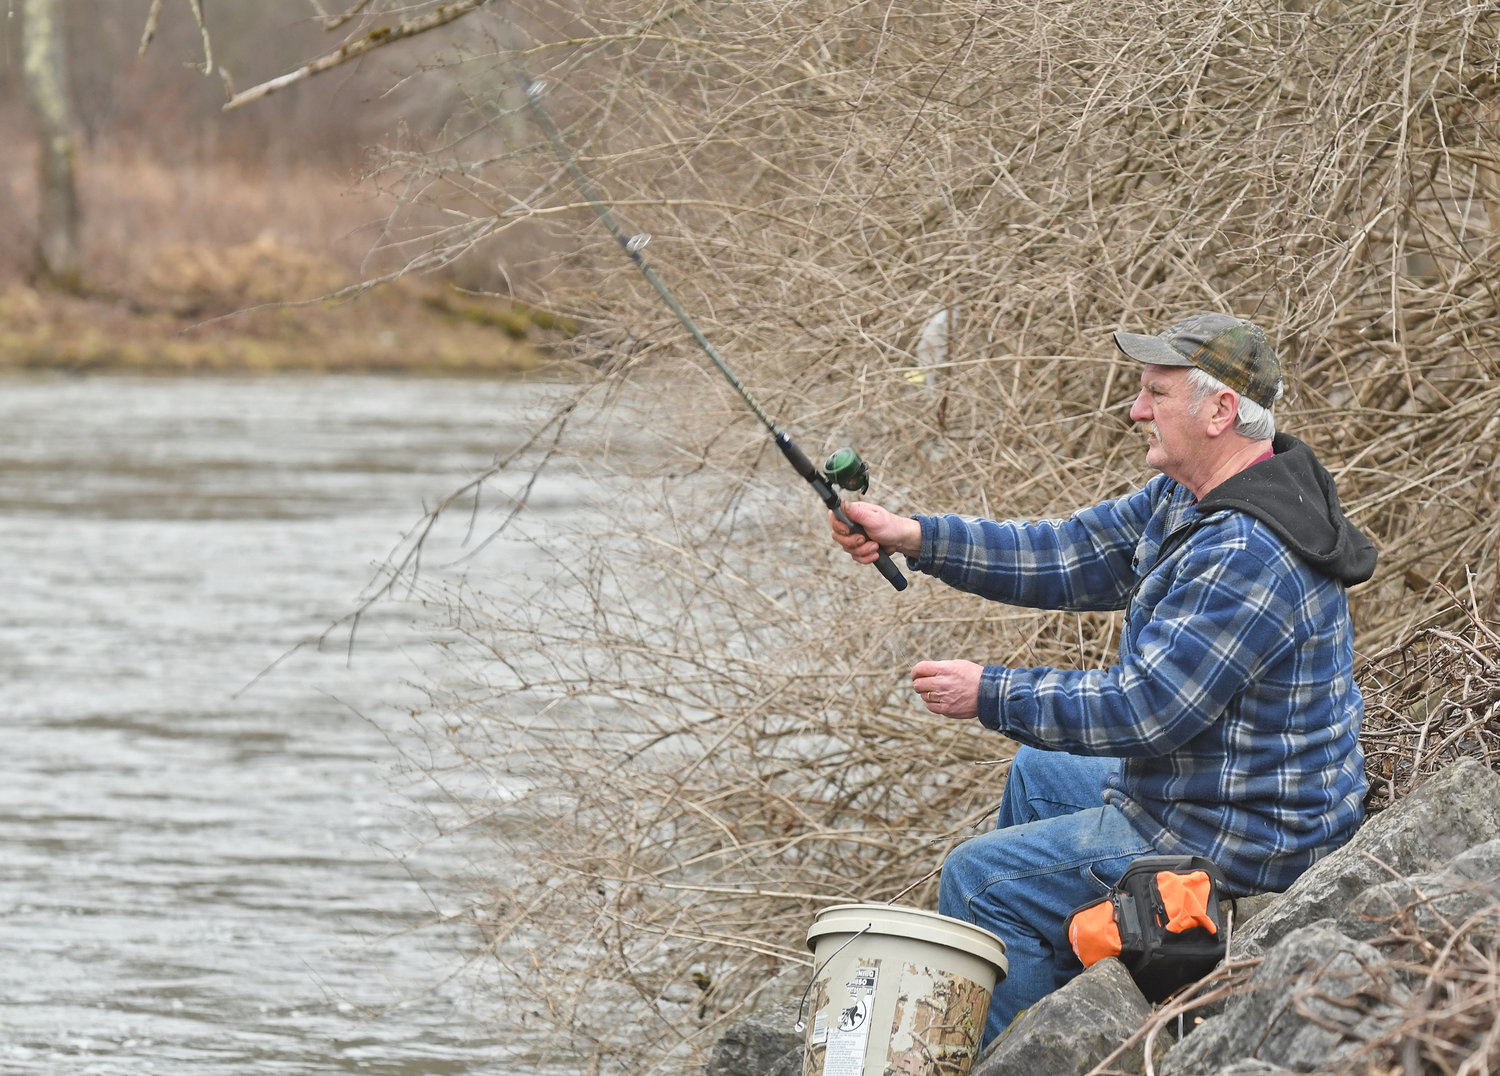 LANZANDO SU LÍNEA – Ricky Wannyn de Camden lanza su línea en el río Mohawk el viernes por la mañana en el primer día de la temporada de pesca de truchas.  Anteriormente, el 1 de abril se consideraba el tradicional 